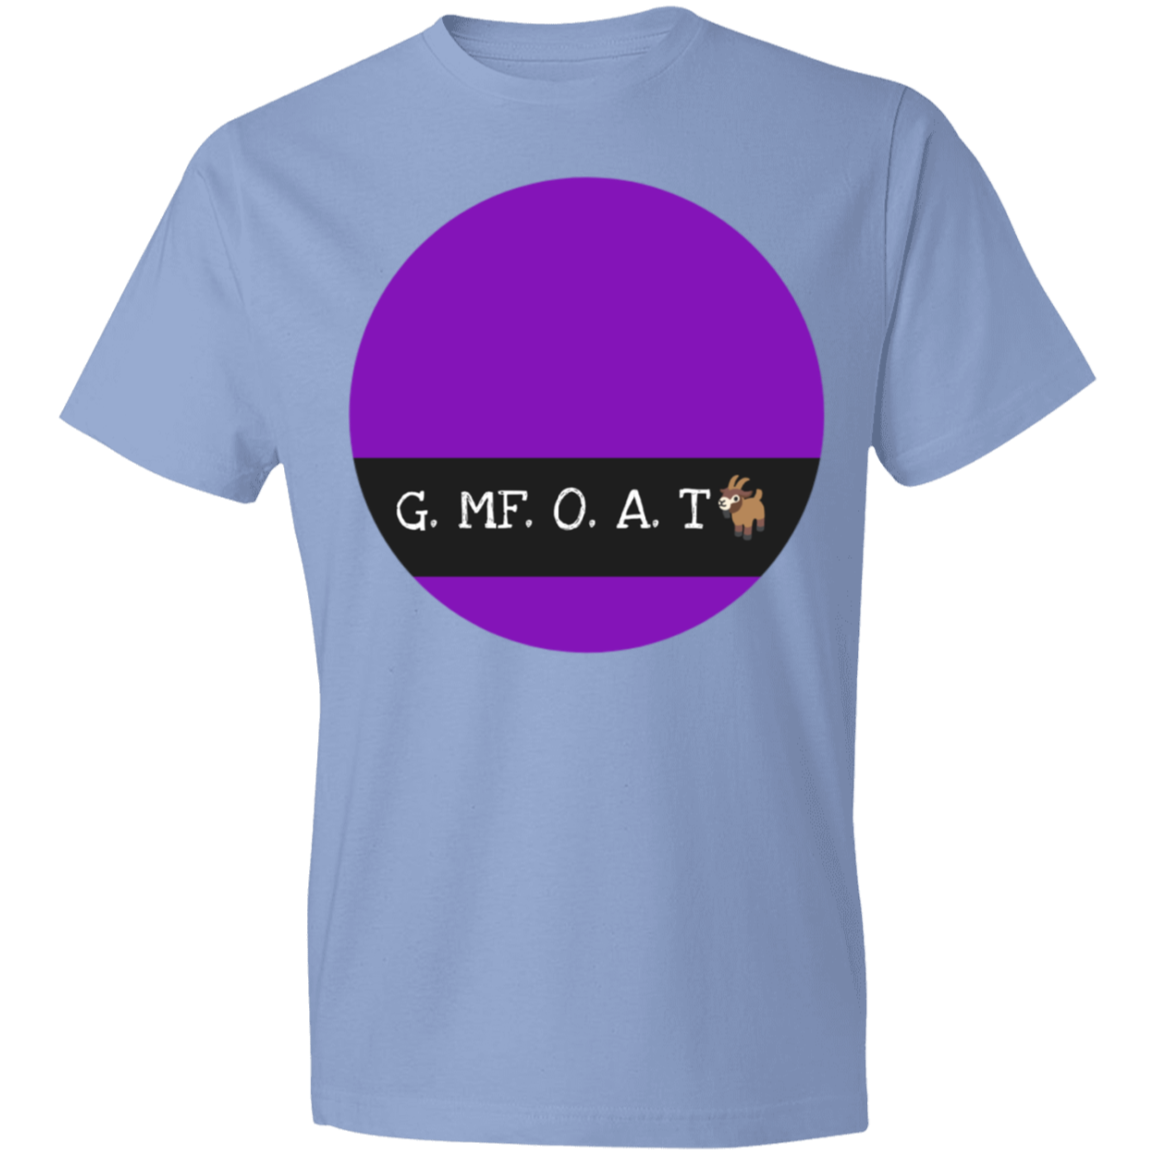 G. MF. O. A. T - Lightweight T-Shirt 4.5 oz CustomCat